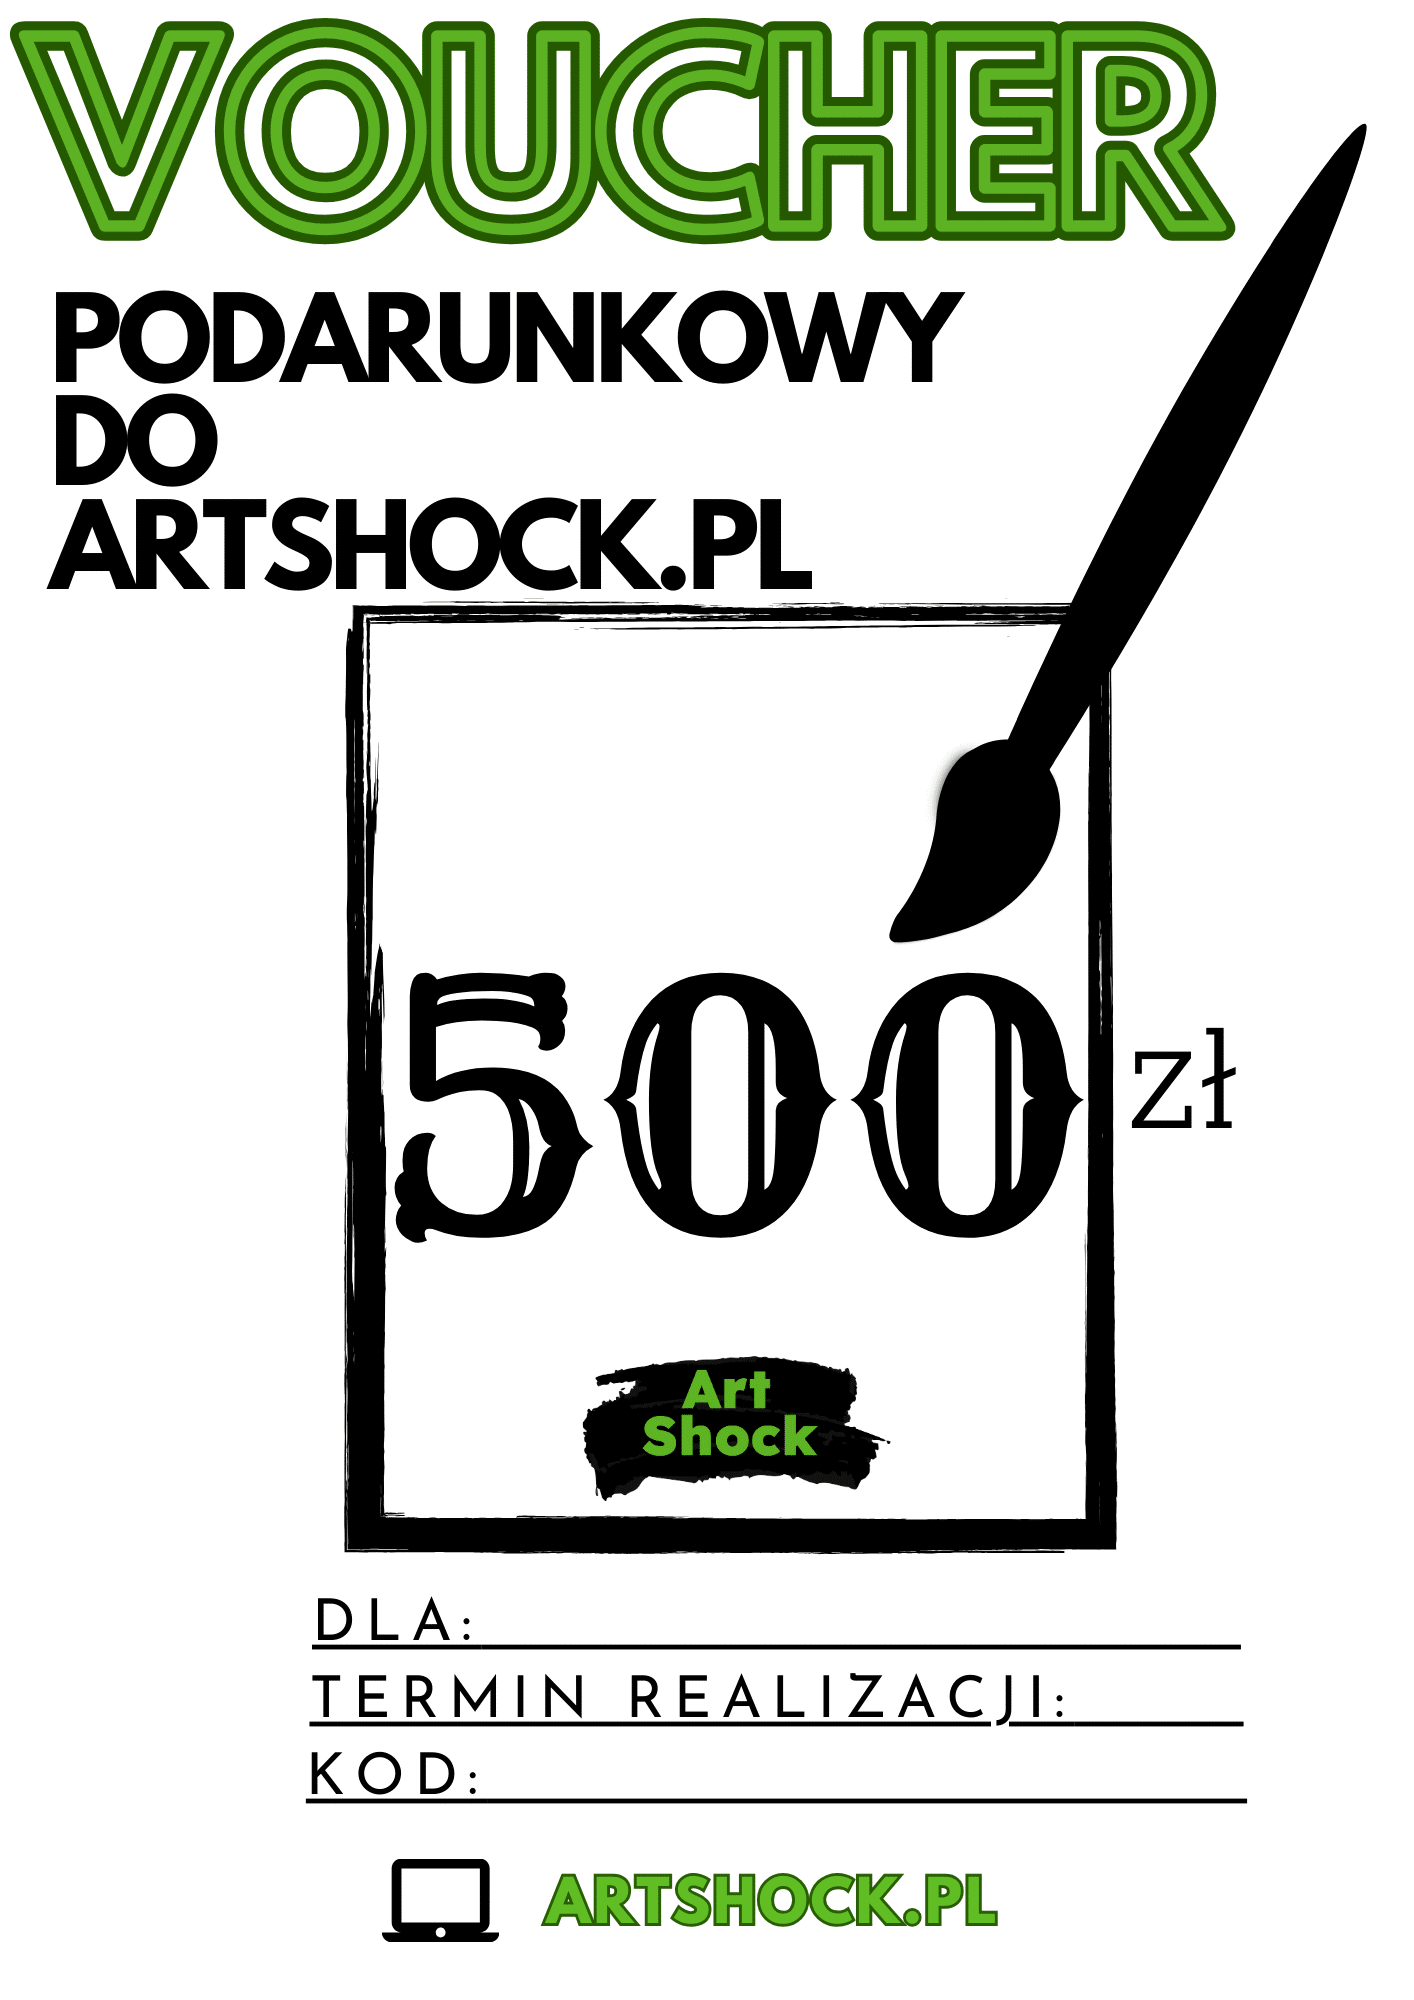 Bon podarunkowy do Artshock.pl 500zł